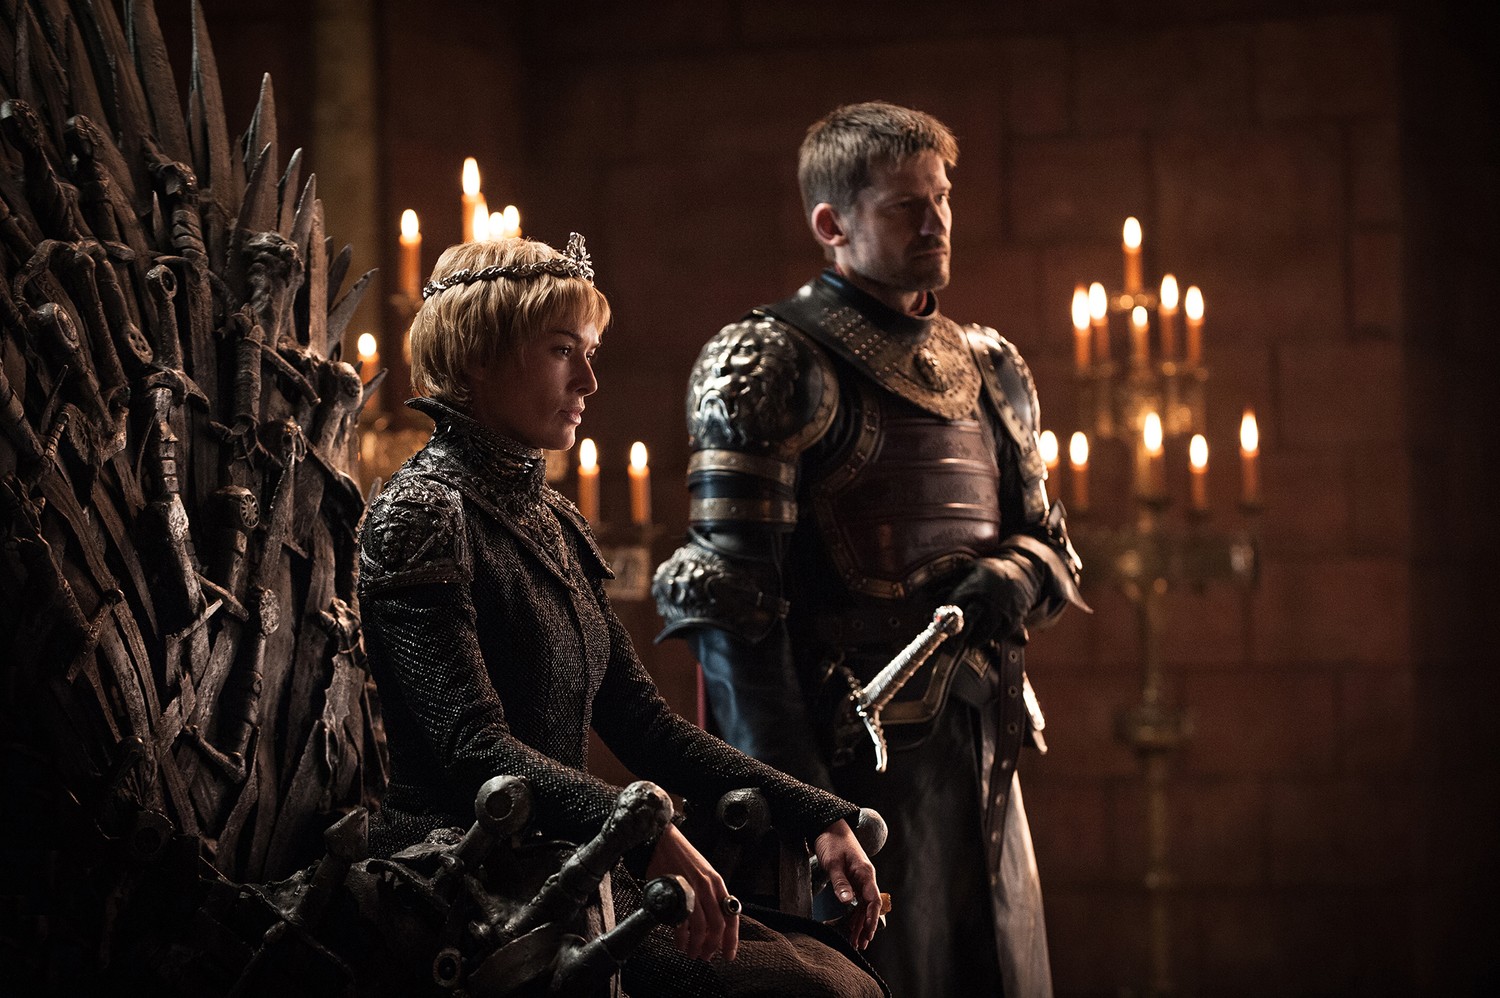 People 1500x998 Game of Thrones Cersei Lannister Jaime Lannister TV series TV crown Lena Headey Nikolaj Coster-Waldau